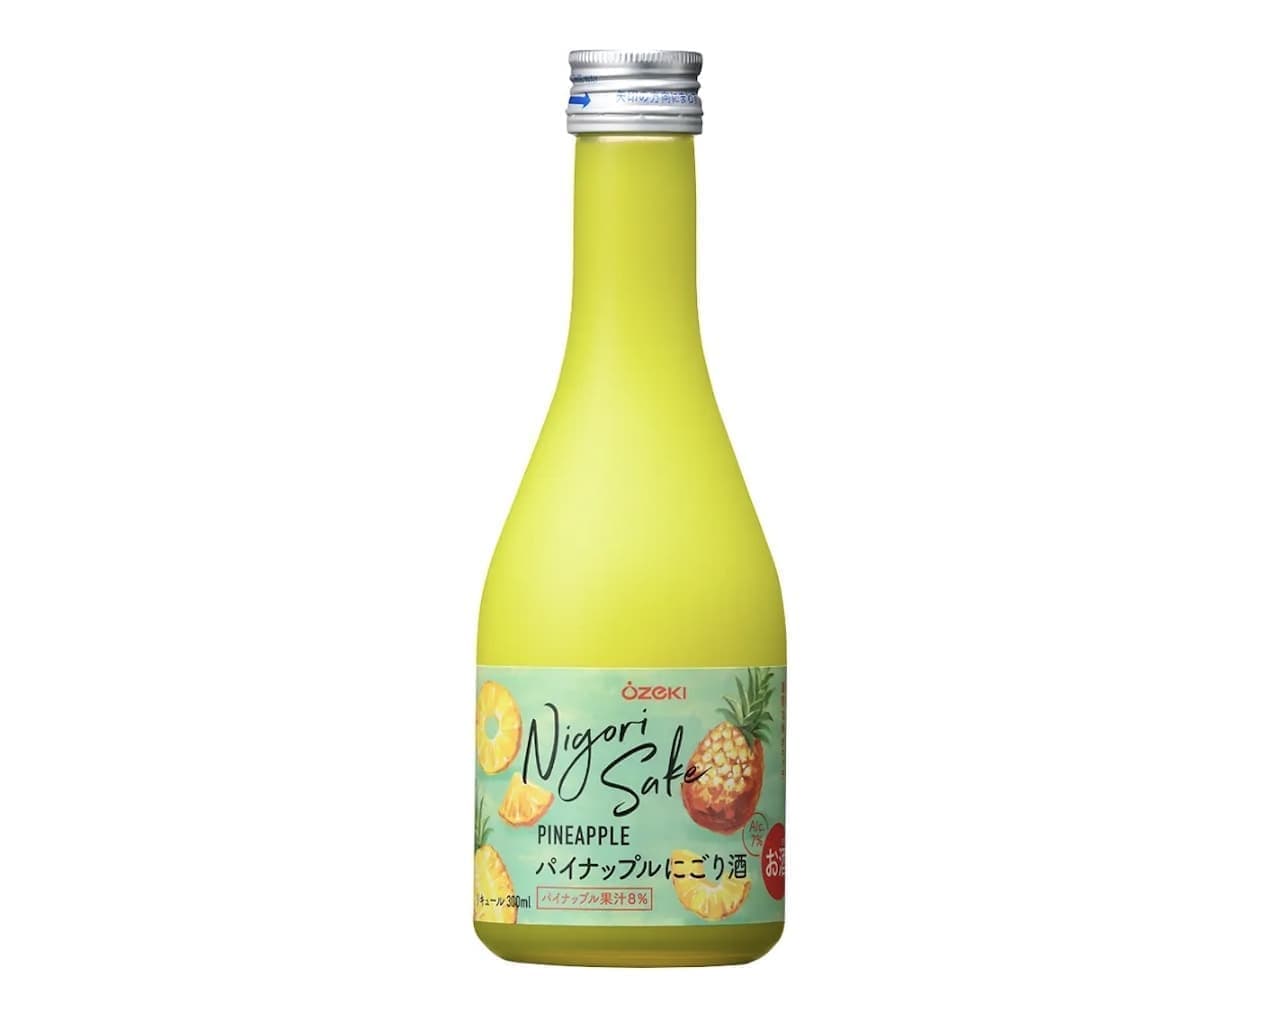 Ozeki "Pineapple Nigori Sake 300ml bottled